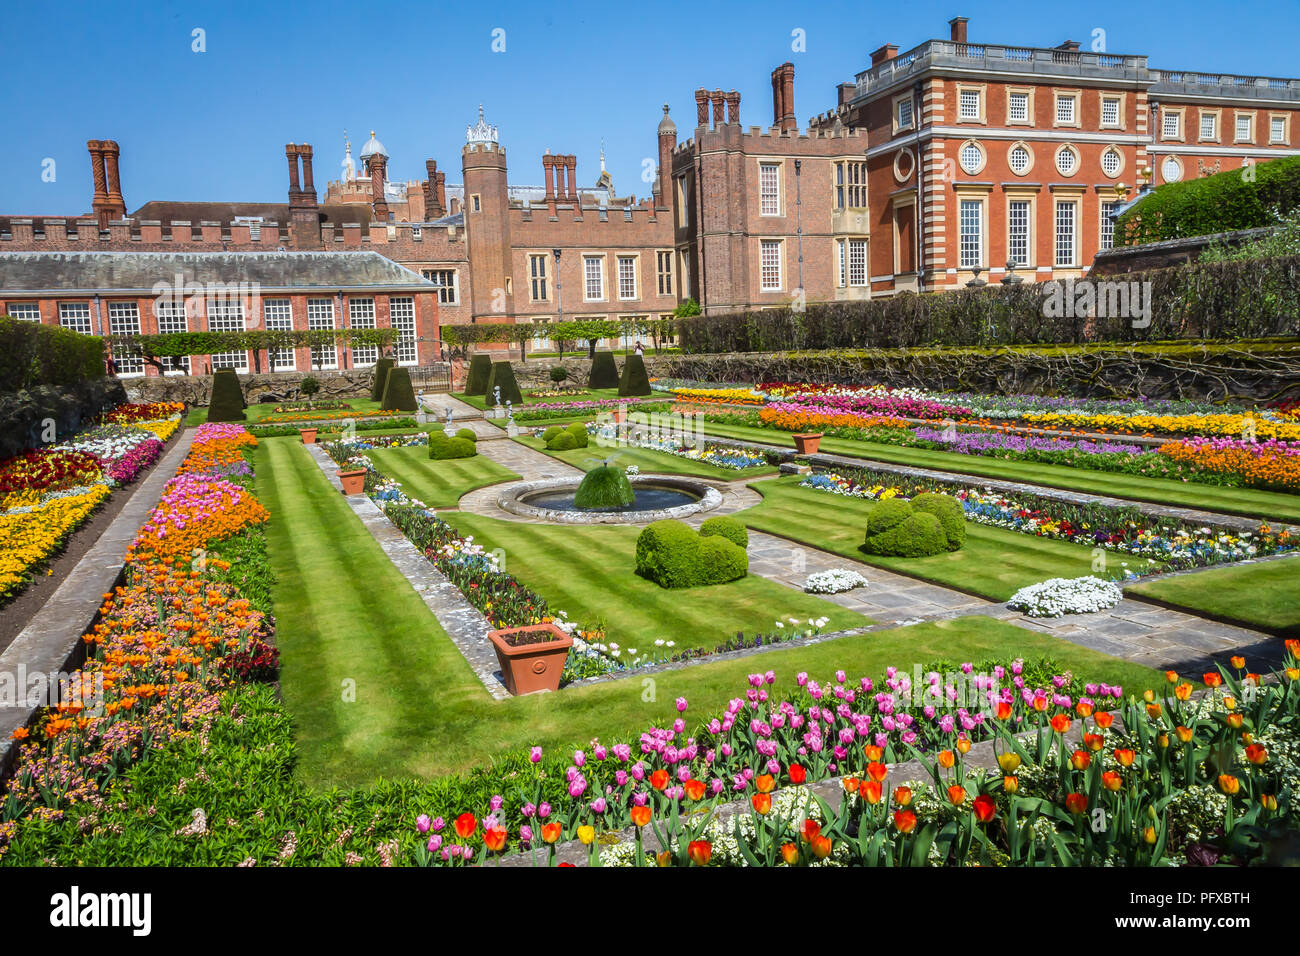 Le Palais de Hampton Court, Richmond, Londres, Royaume-Uni - 22 avril 2018 - les jardins du palais Banque D'Images